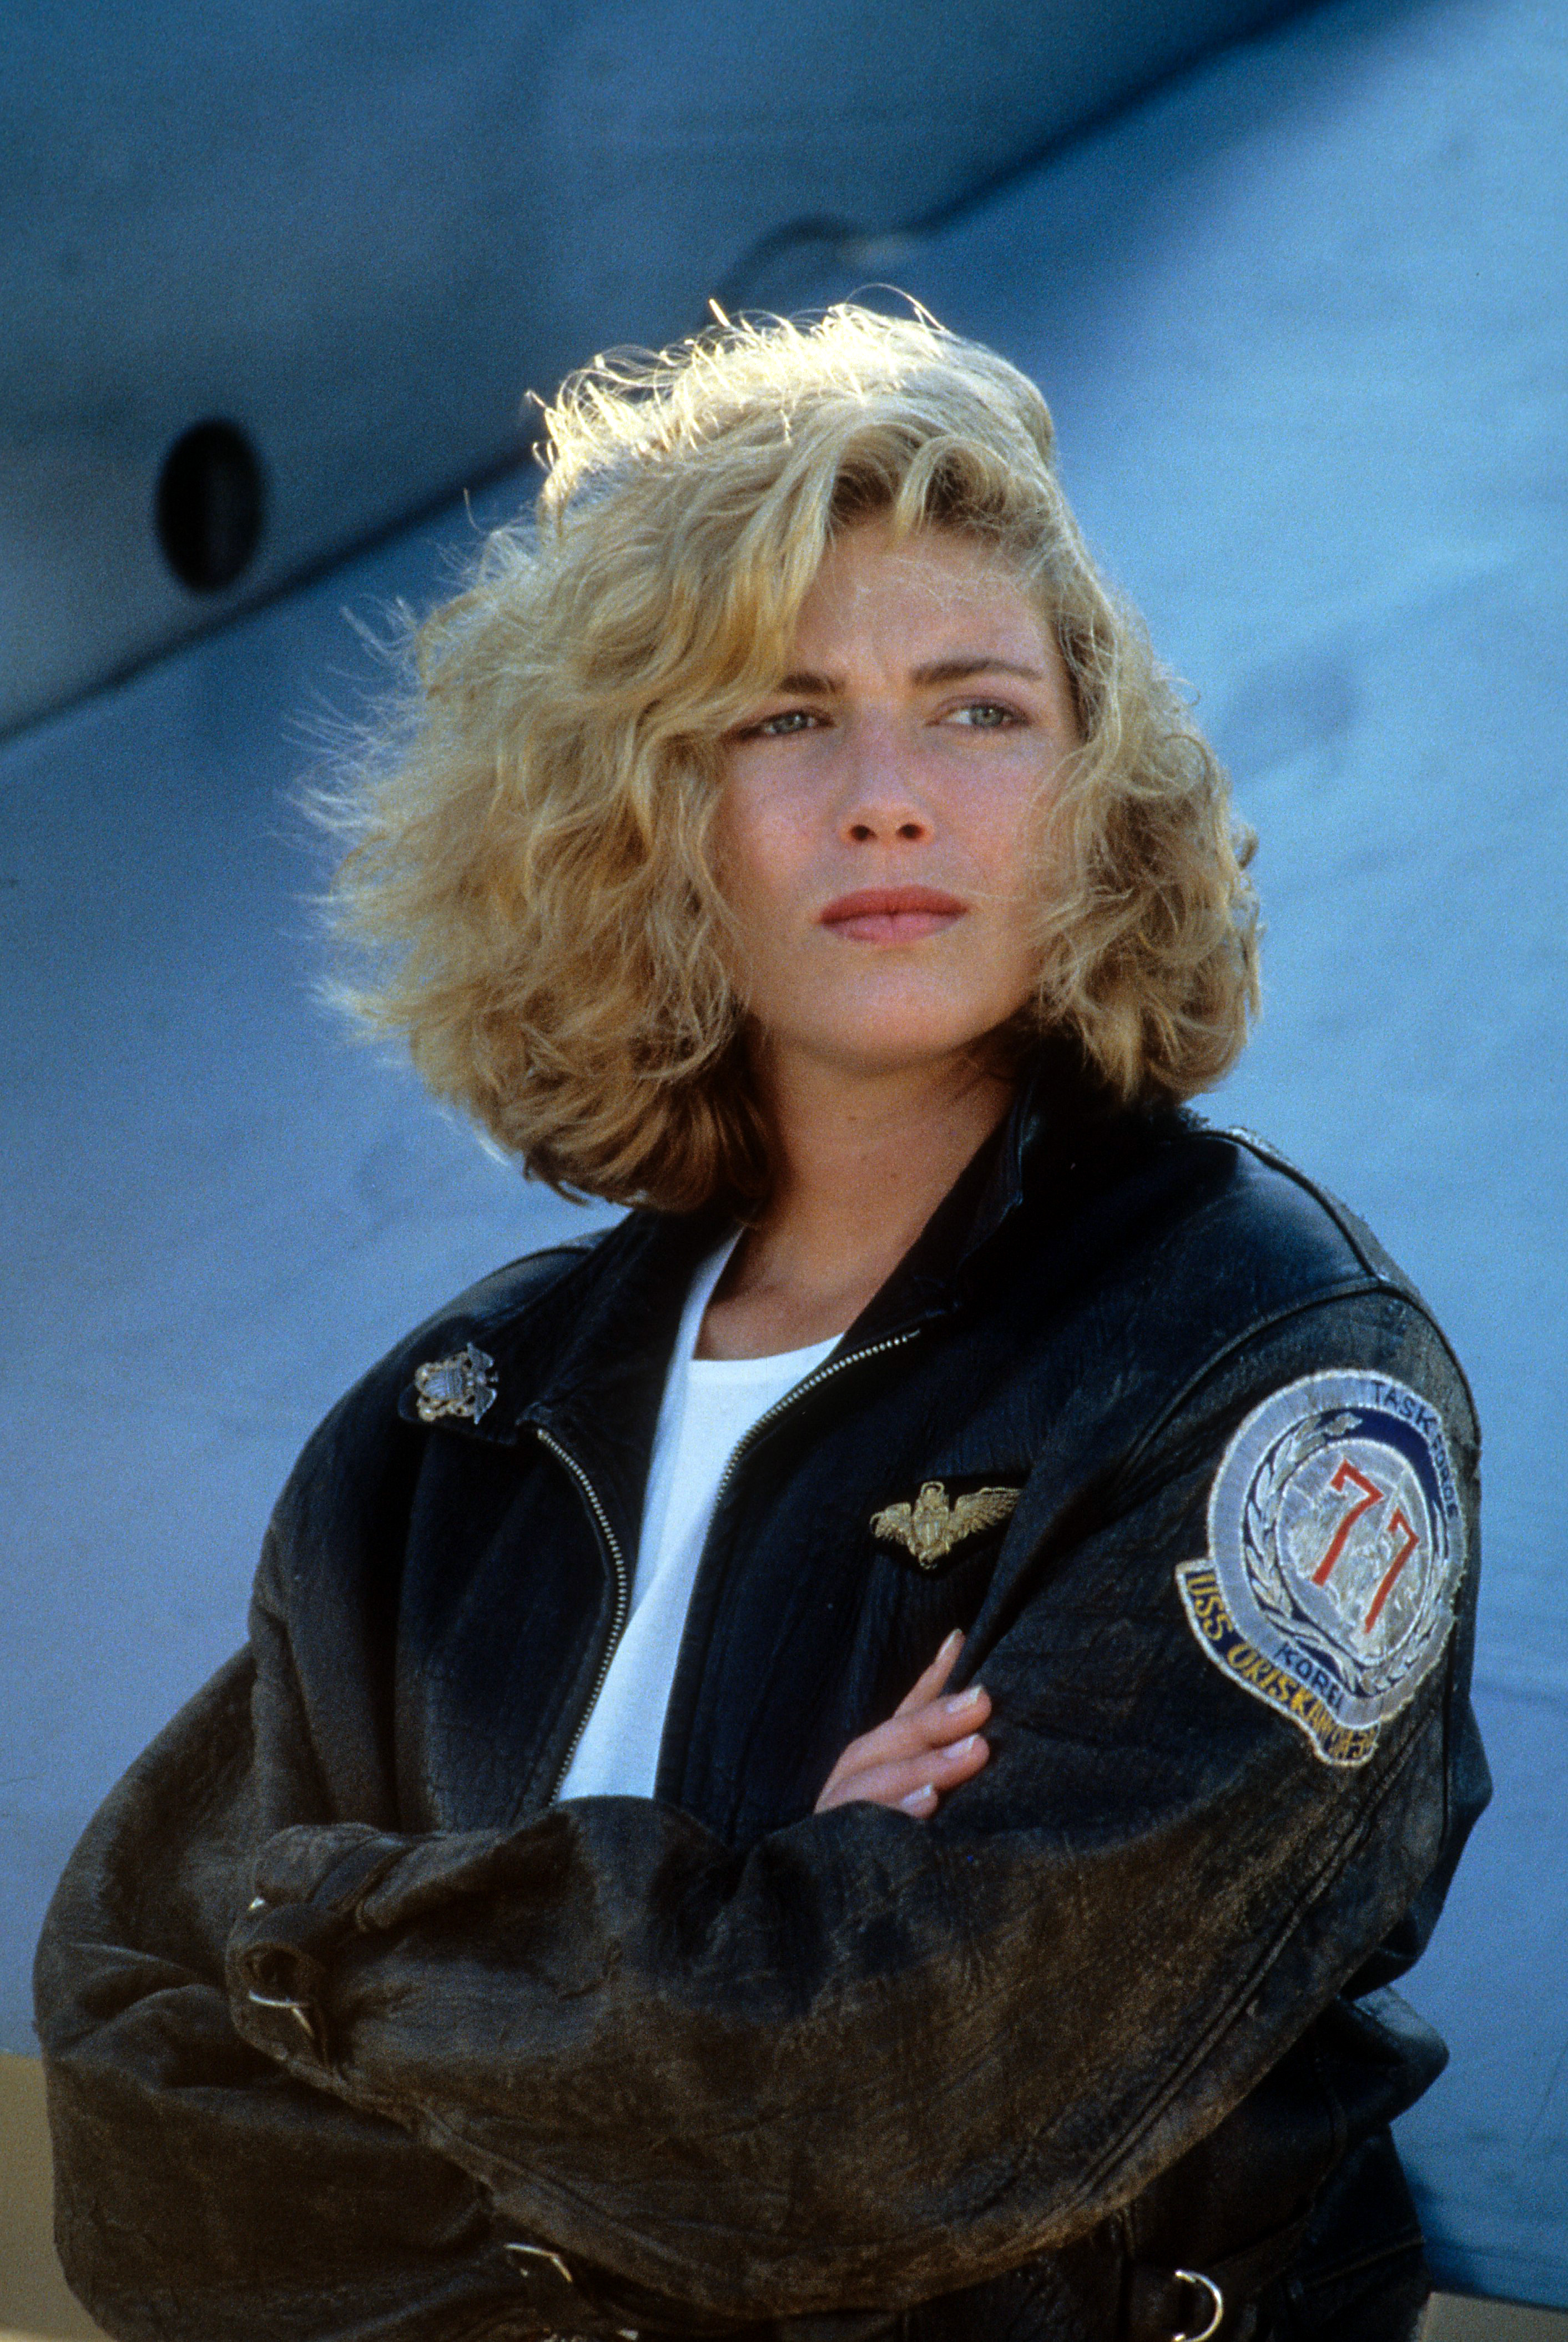 Kelly McGillis dans une scène de "Top Gun" en 1986 | Source : Getty Images